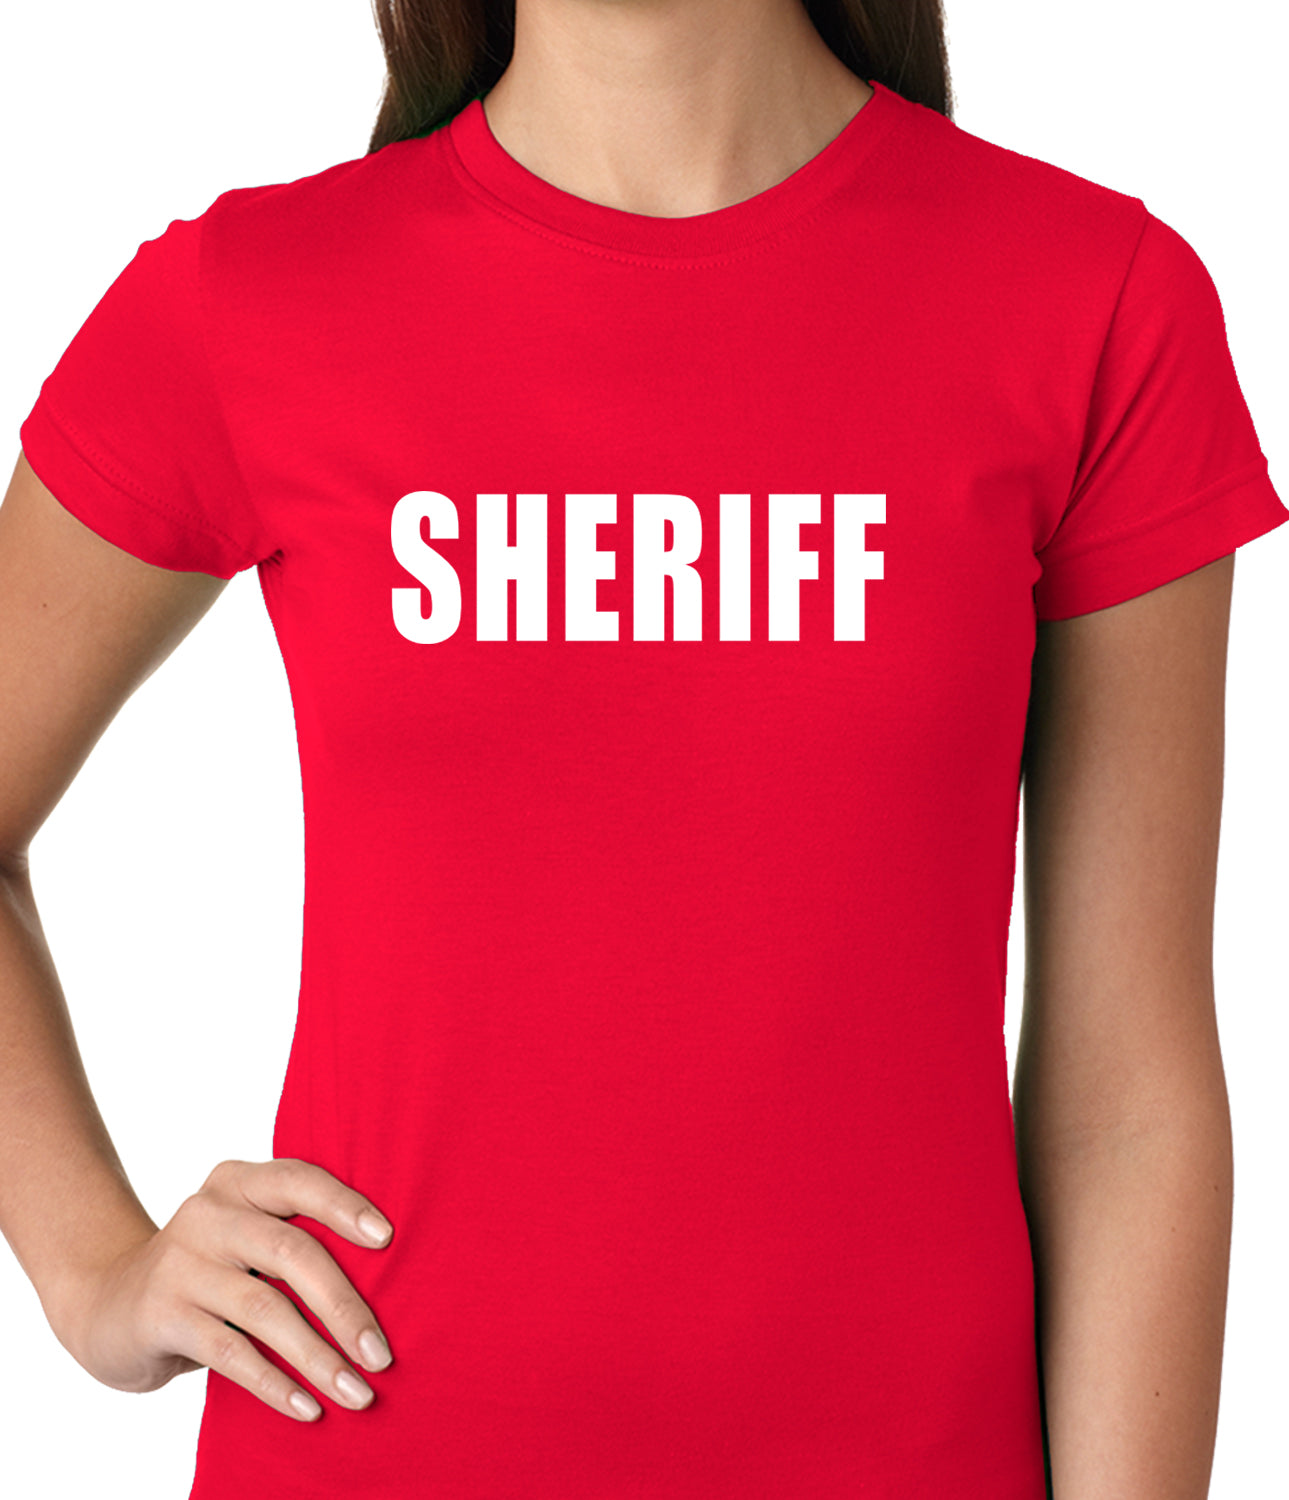 Sheriff Costum Ladies T-shirt